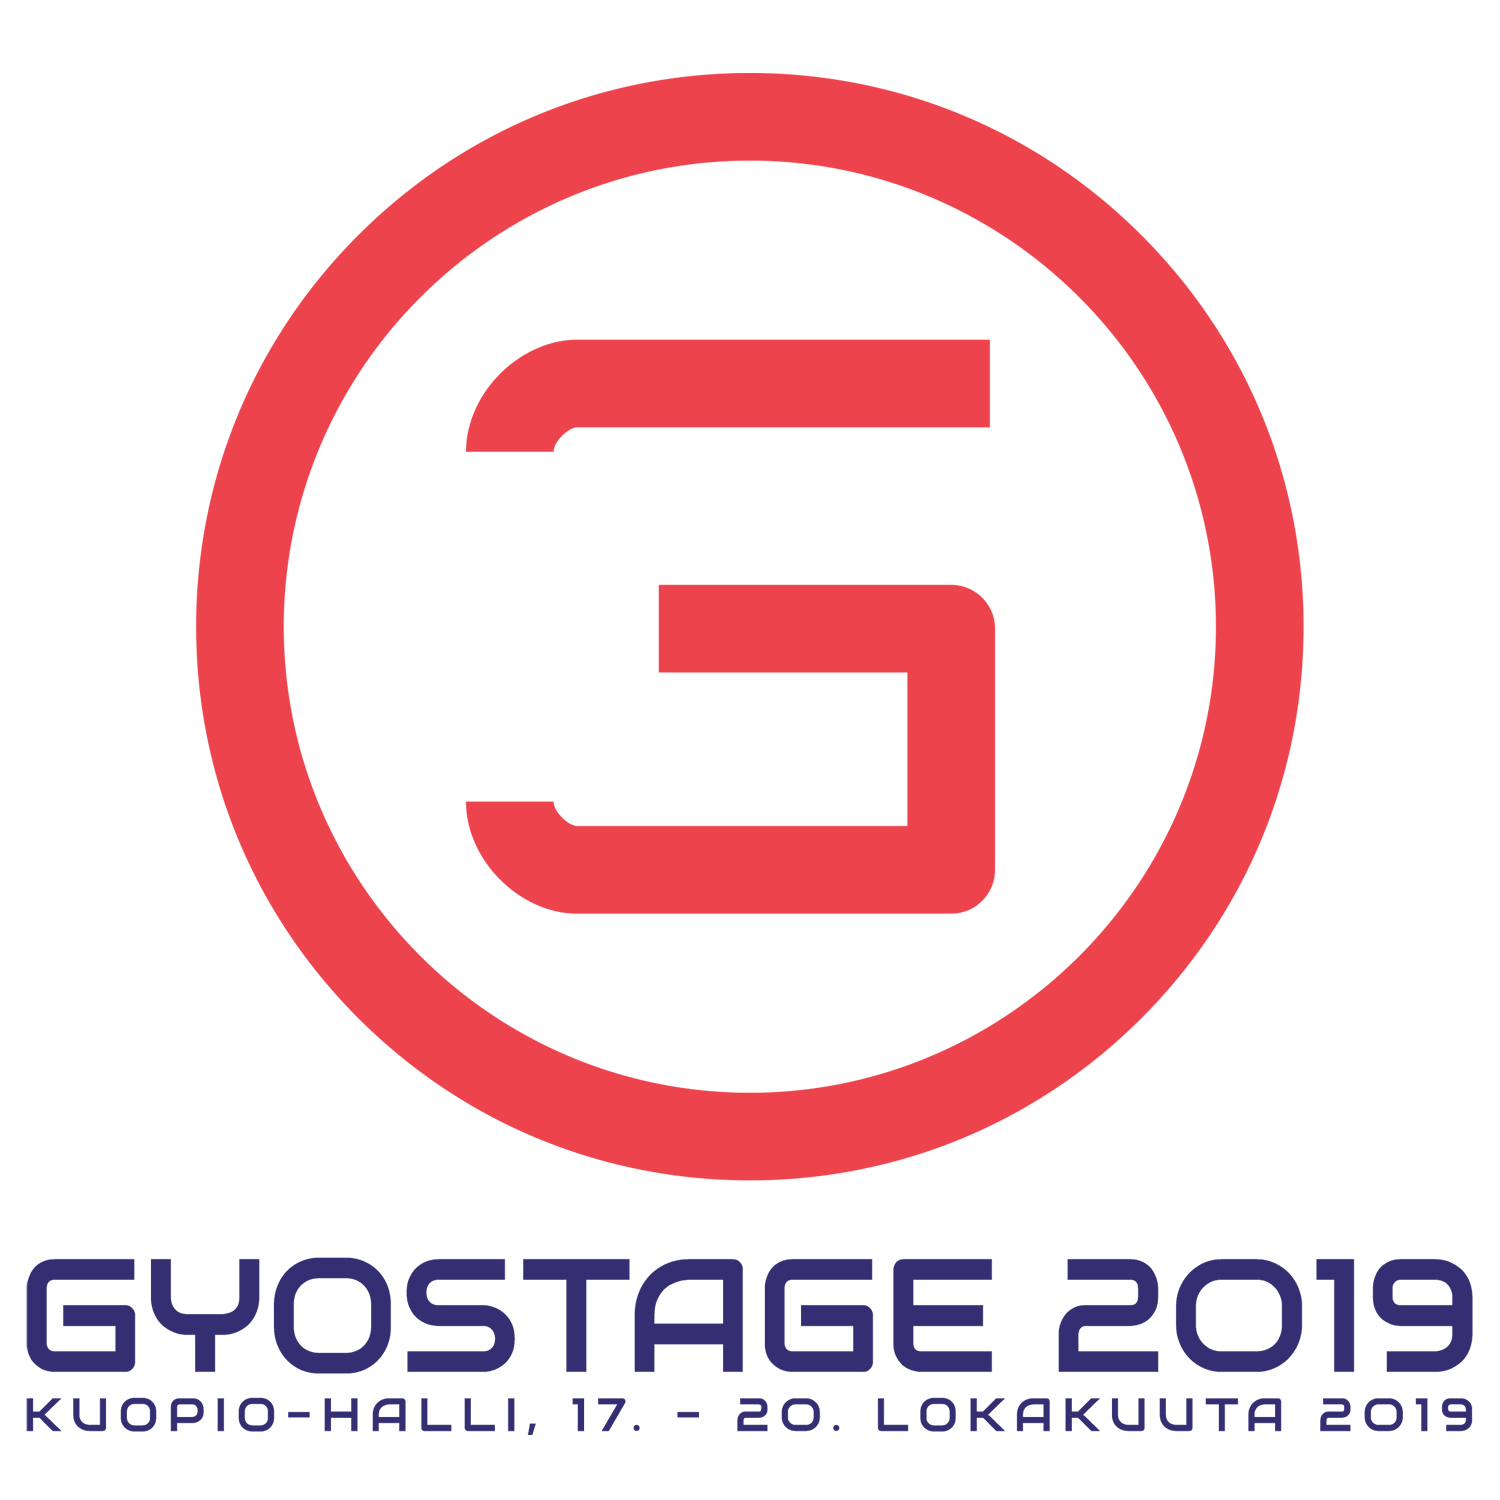 Kuopio-hallilla järjestetään 17.-20.10.2019 Gyostage 2019 turnaus!